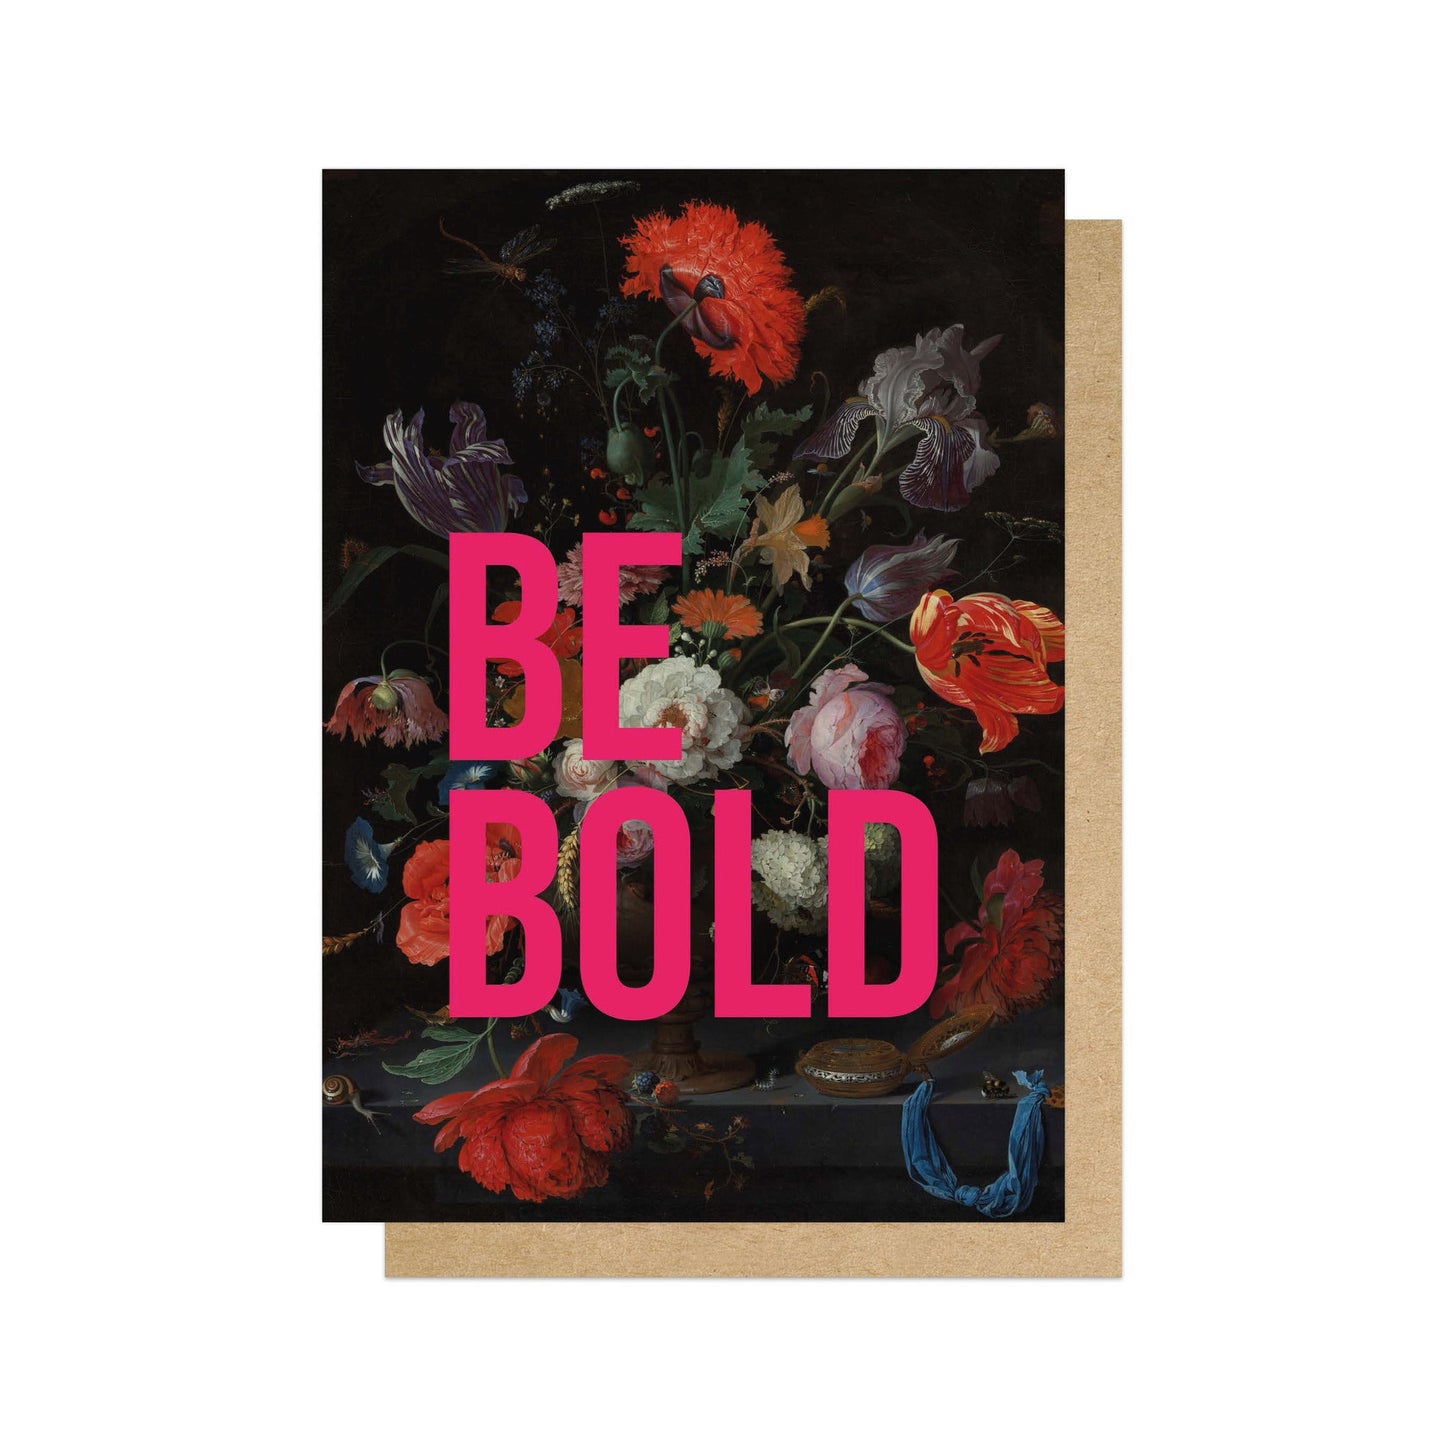 Be Bold Card